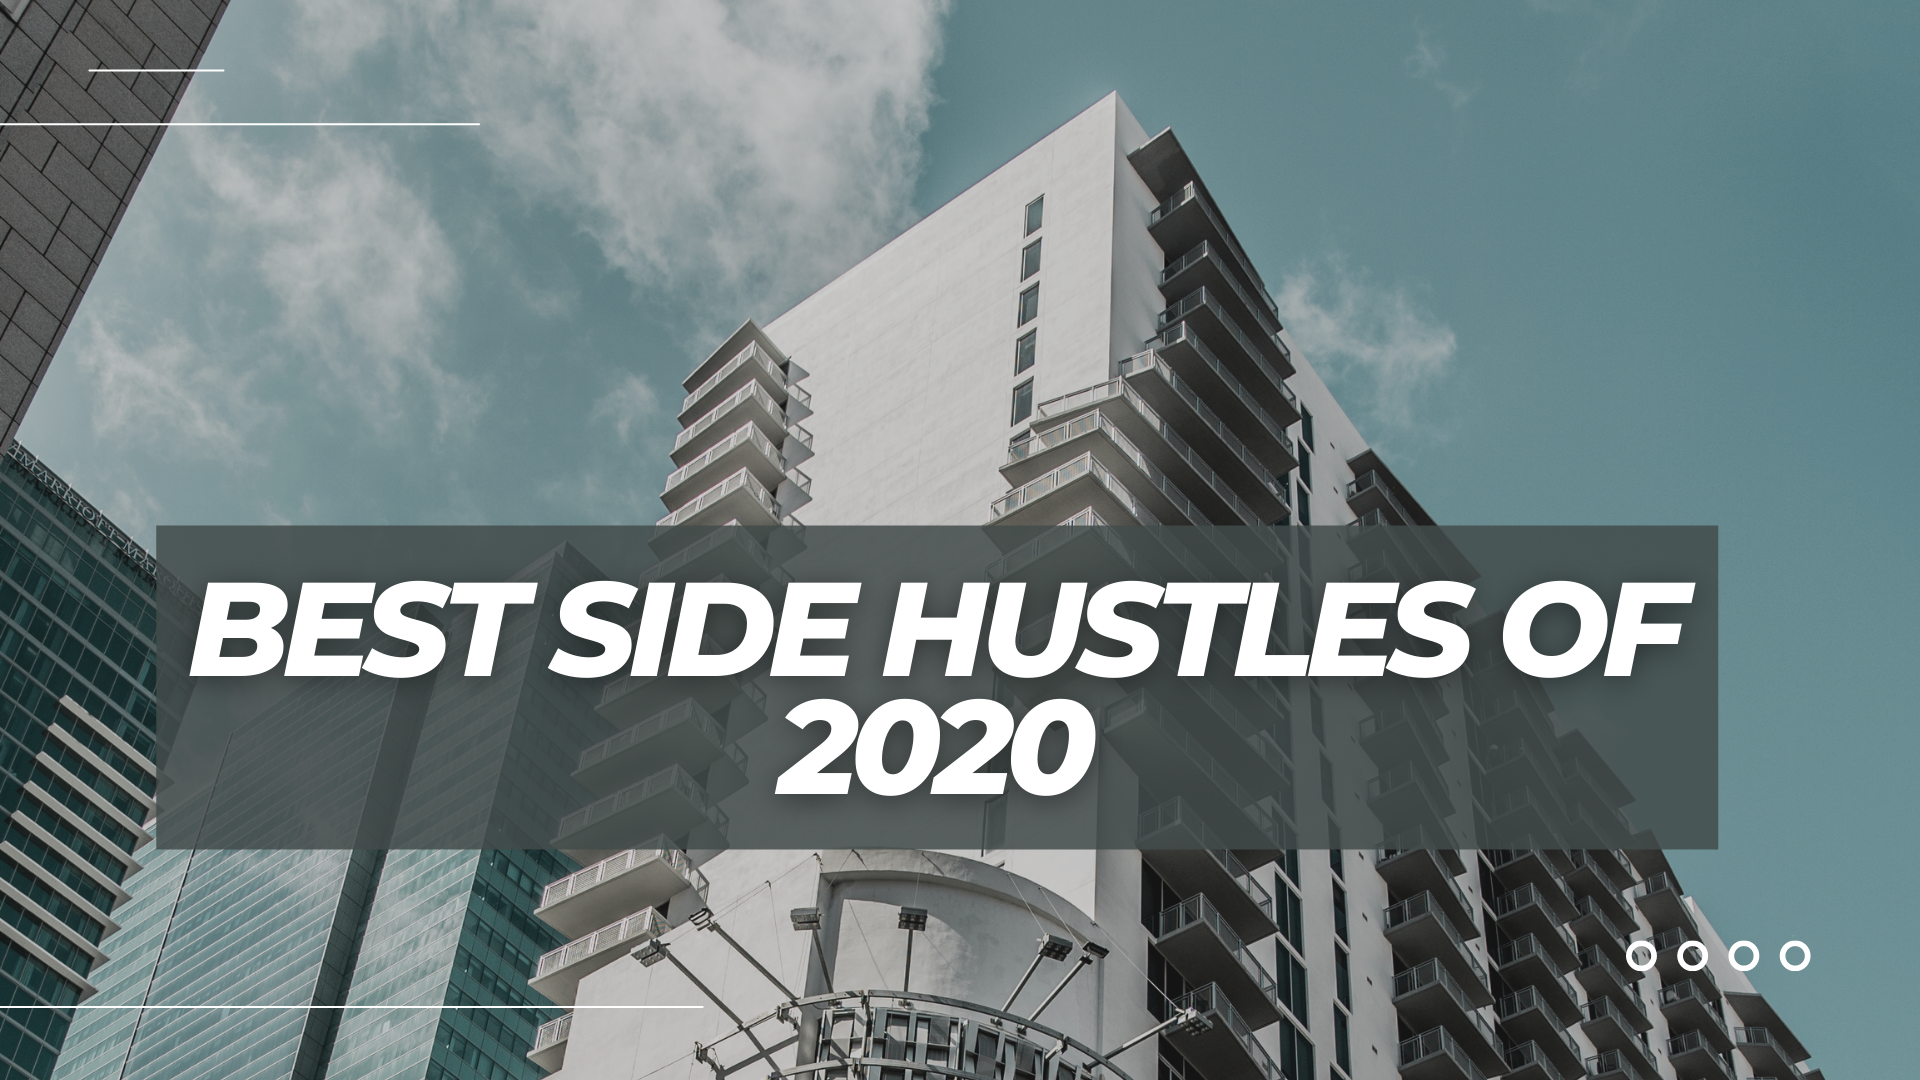 Best side hustles in 2020